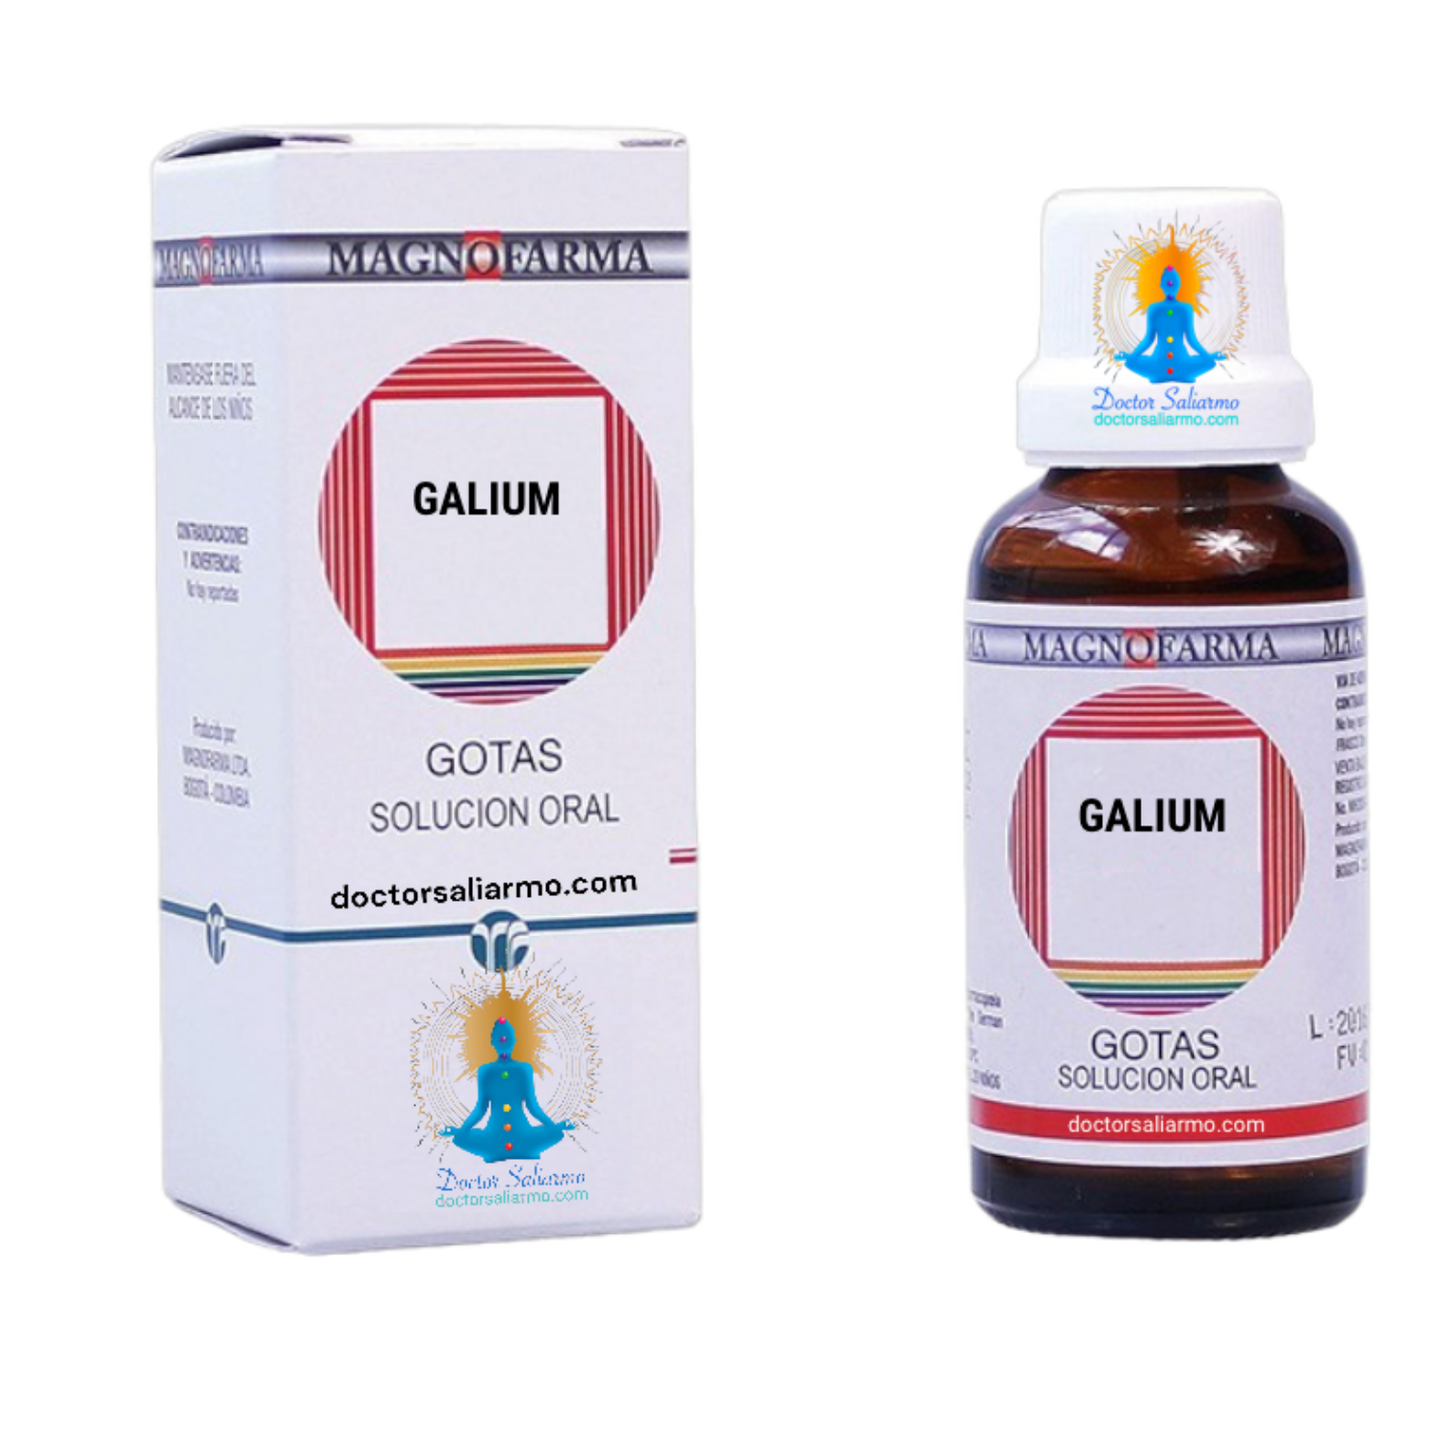 Galium indicado para estimular los mecanismos de defensa inespecíficos, principalmente en caso de enfermedades crónicas relacionadas con el sistema inmunológico